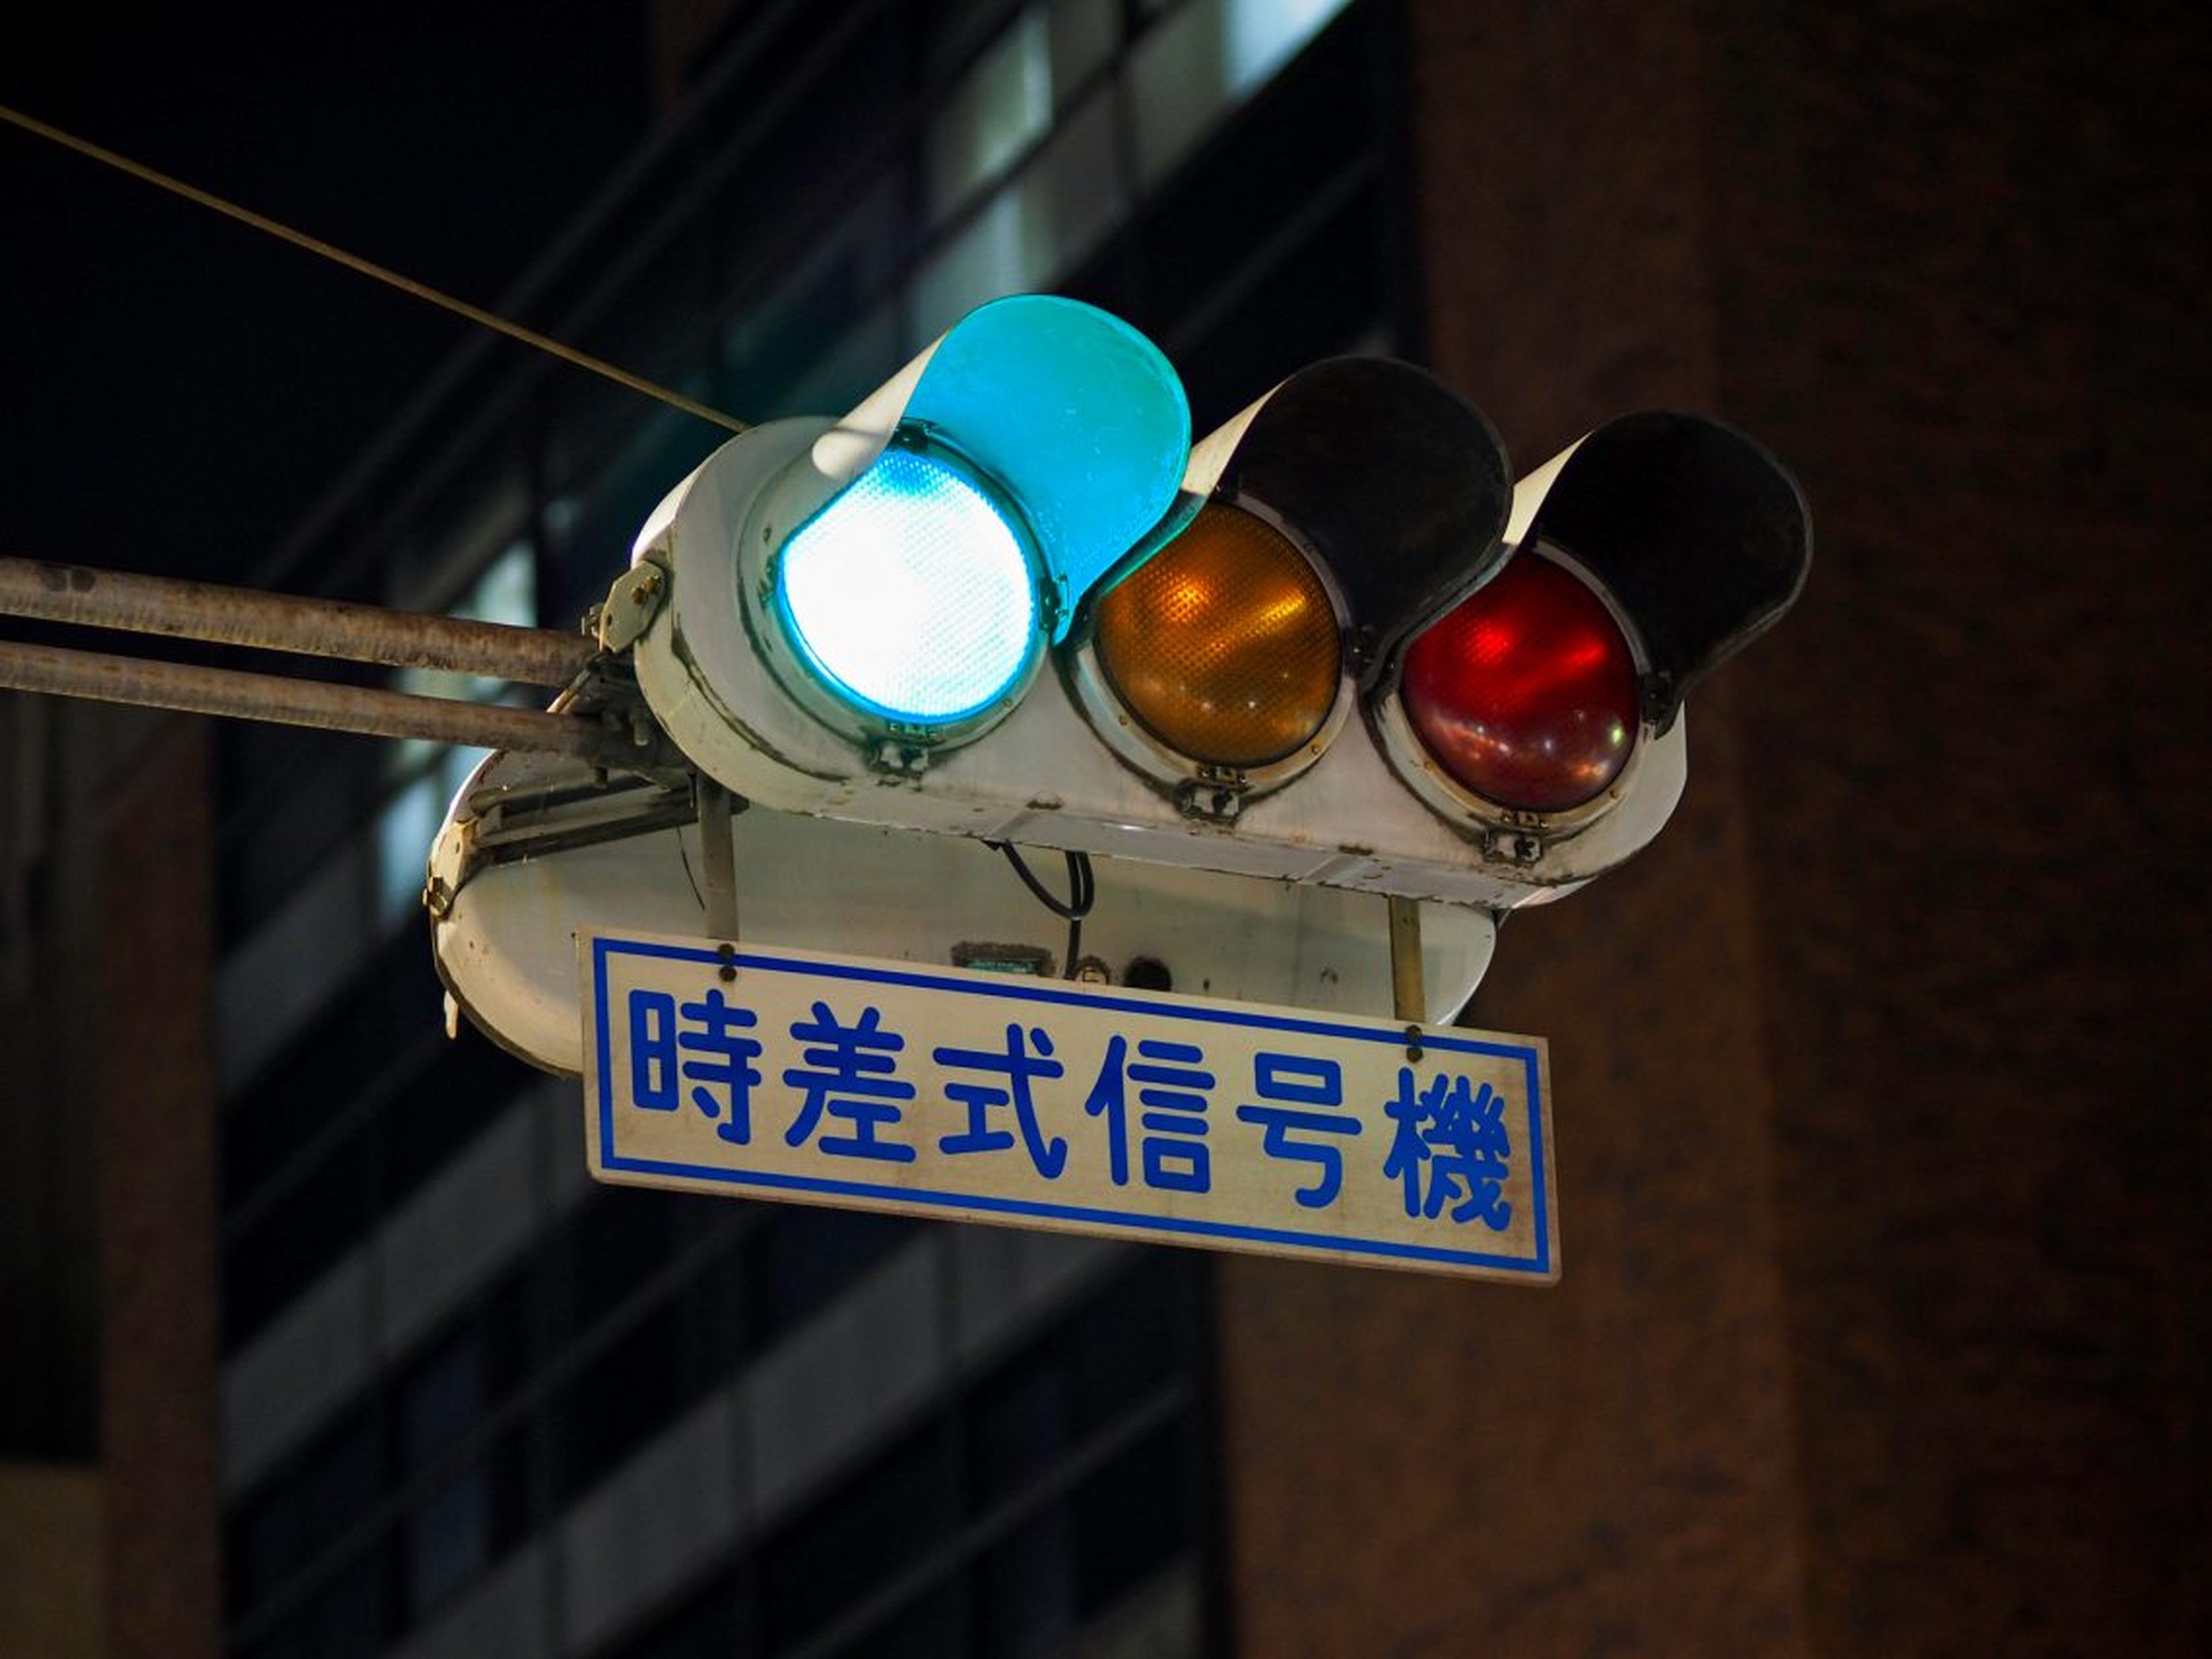 semáforo de japón